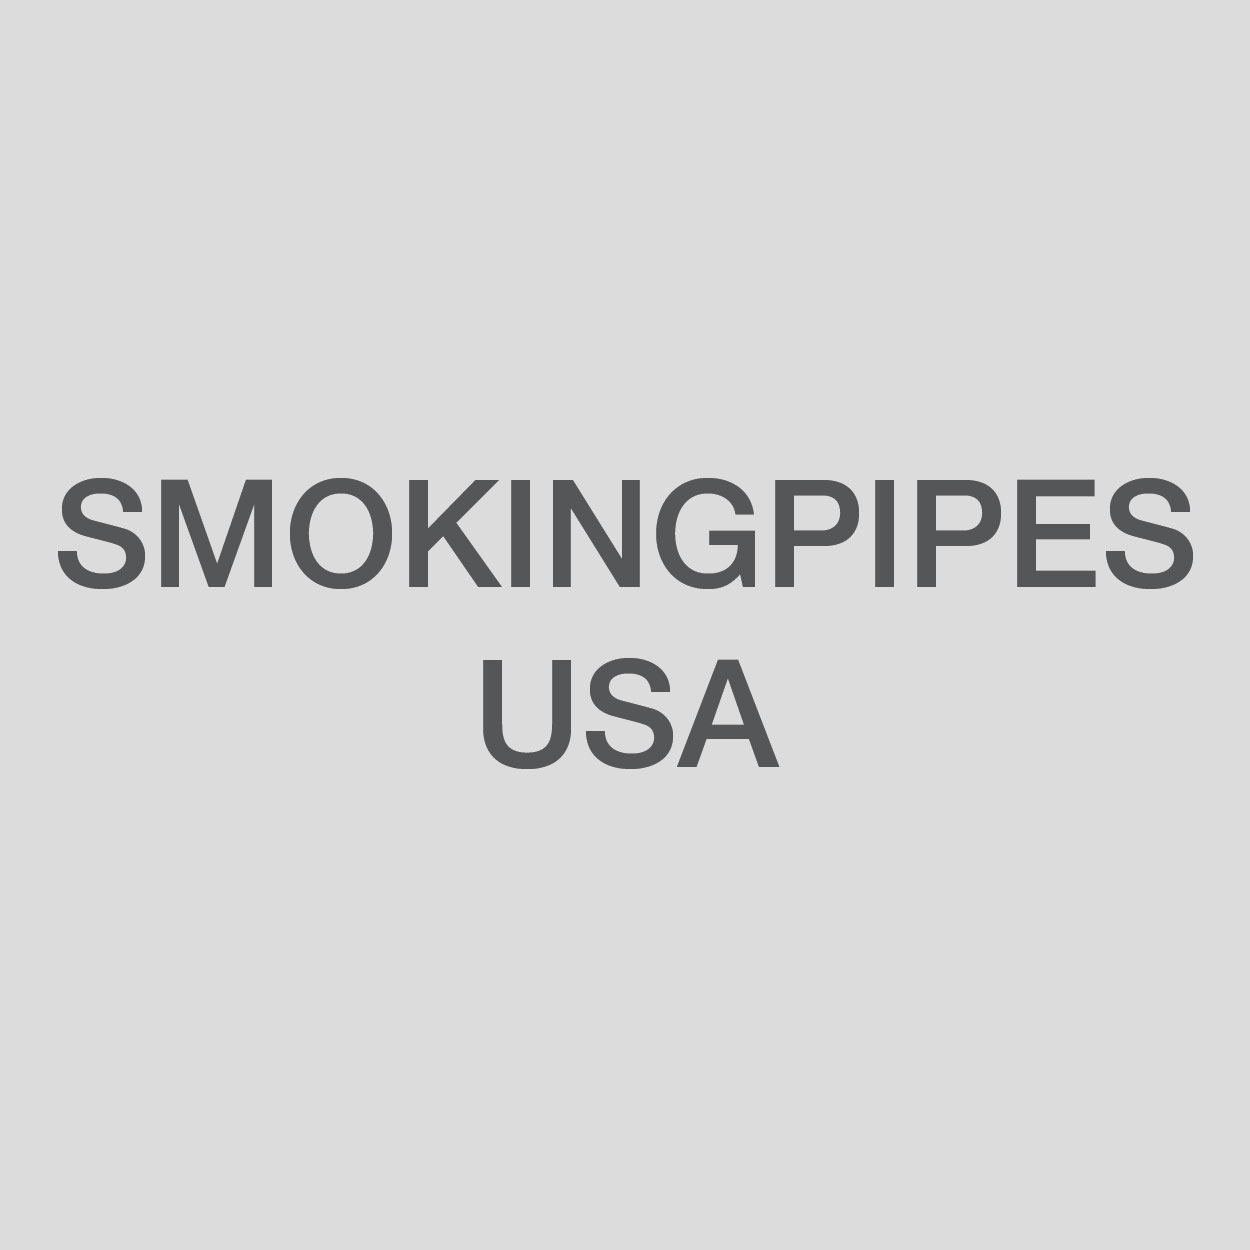 Smokingpipes USA